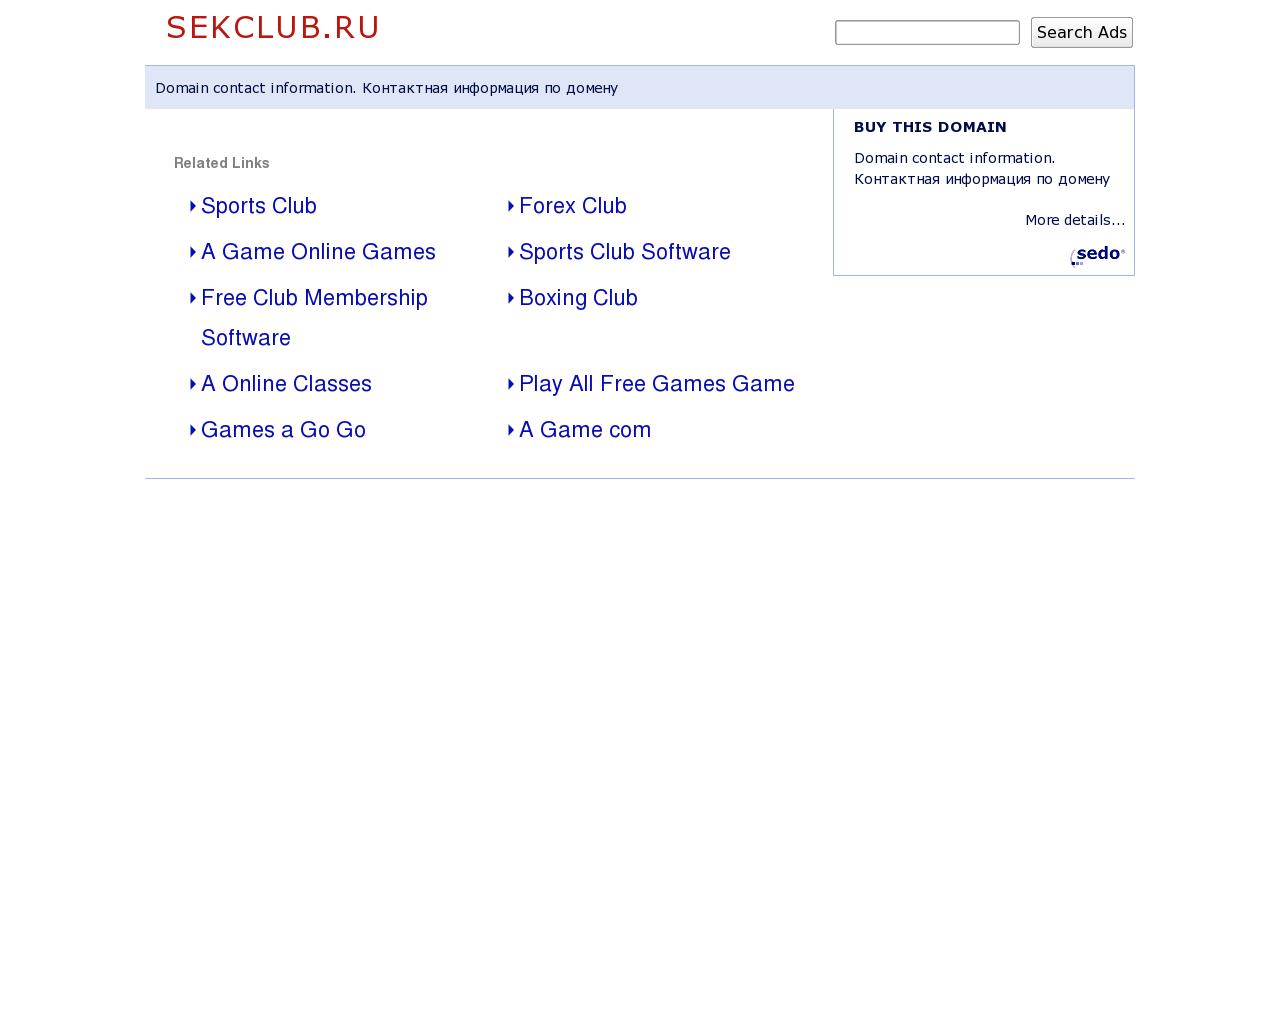 Изображение сайта sekclub.ru в разрешении 1280x1024